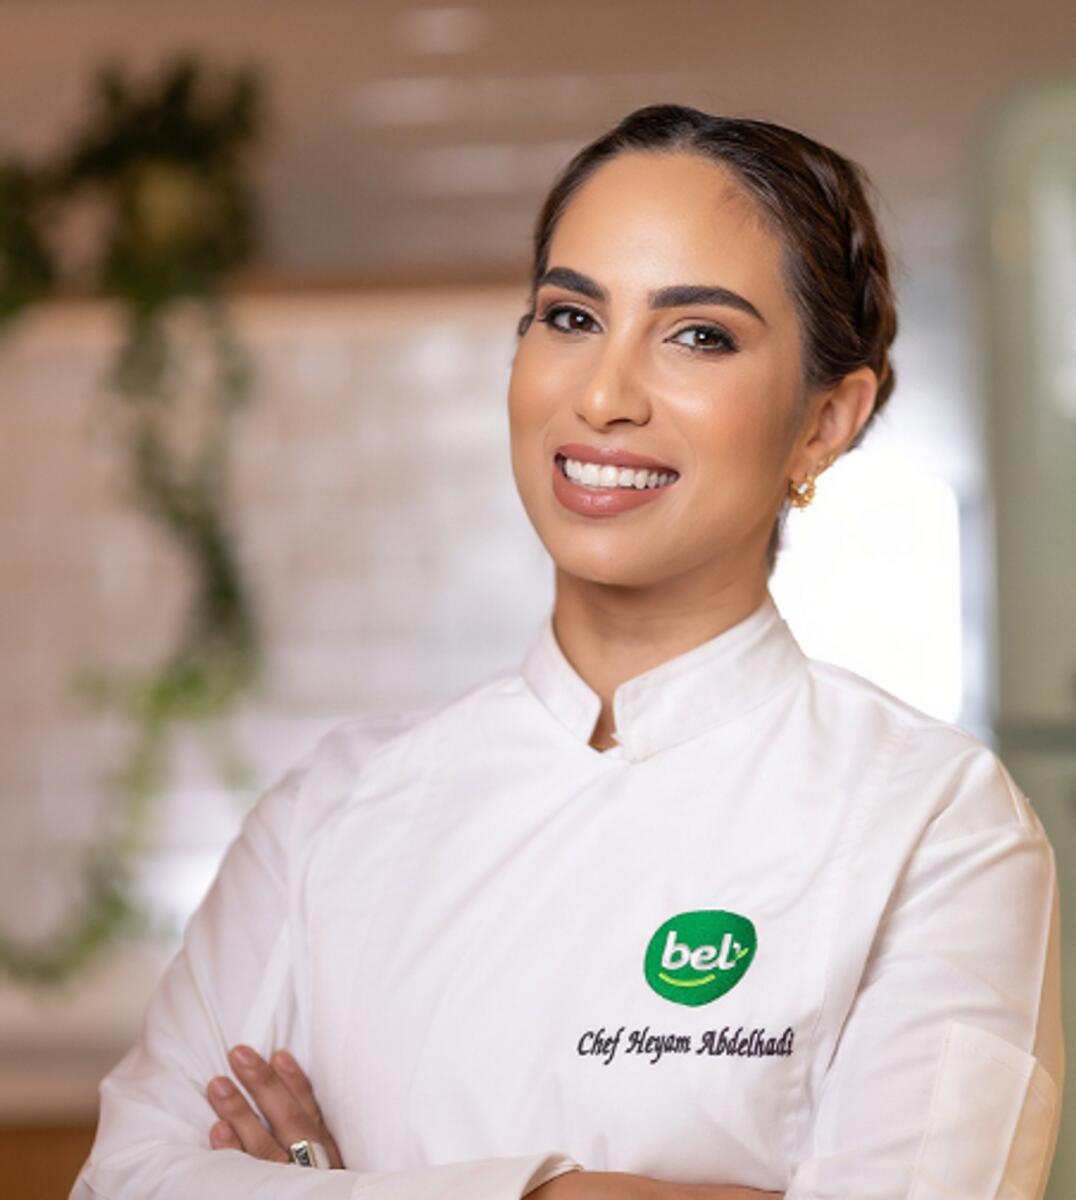 Chef Heyam Adelhadi, Executive Chef of Bel Groupe.